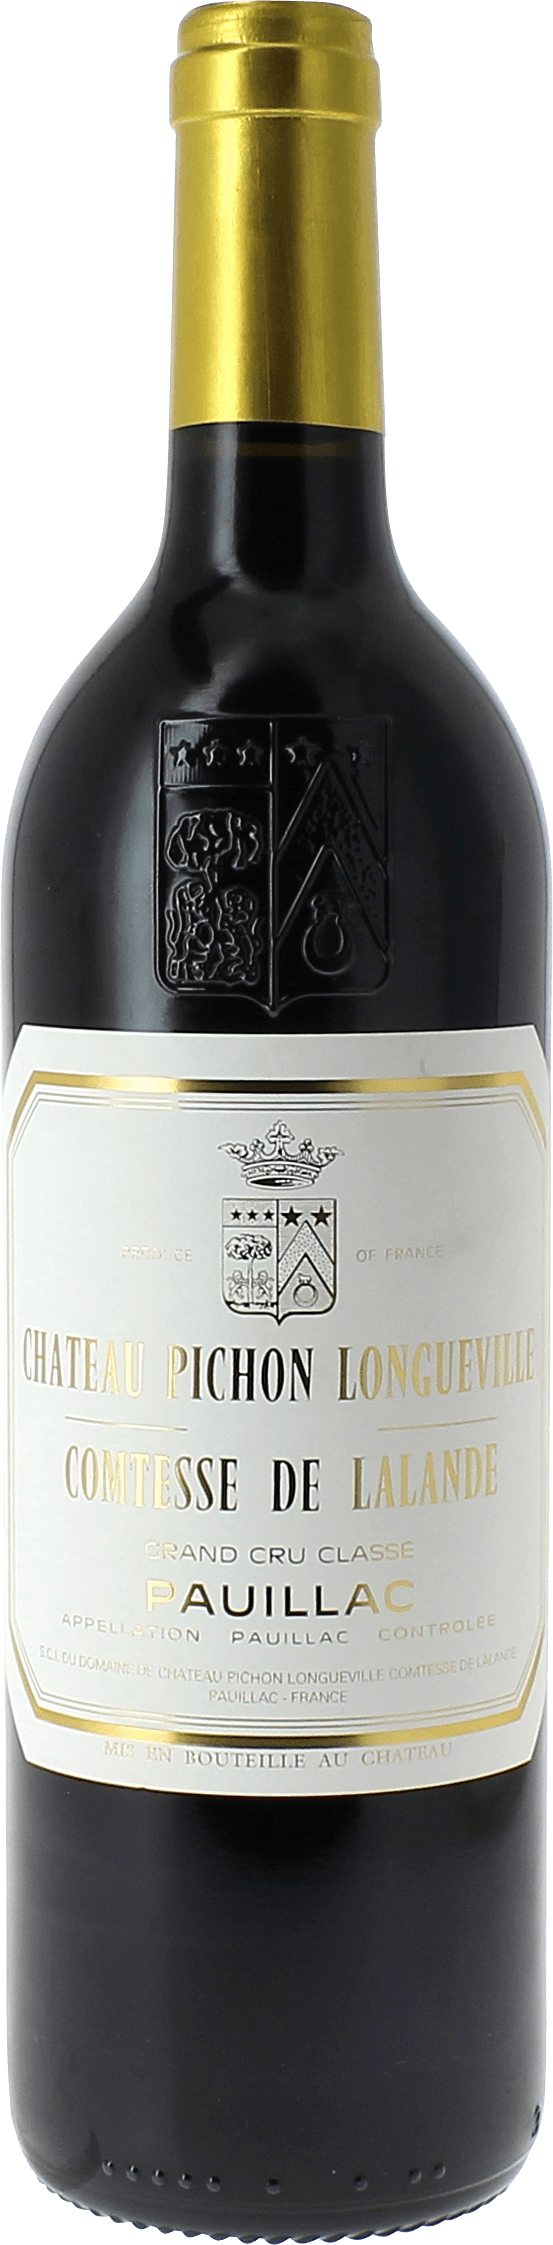 Pichon comtesse de lalande 1998 2me Grand cru class Pauillac, Bordeaux rouge